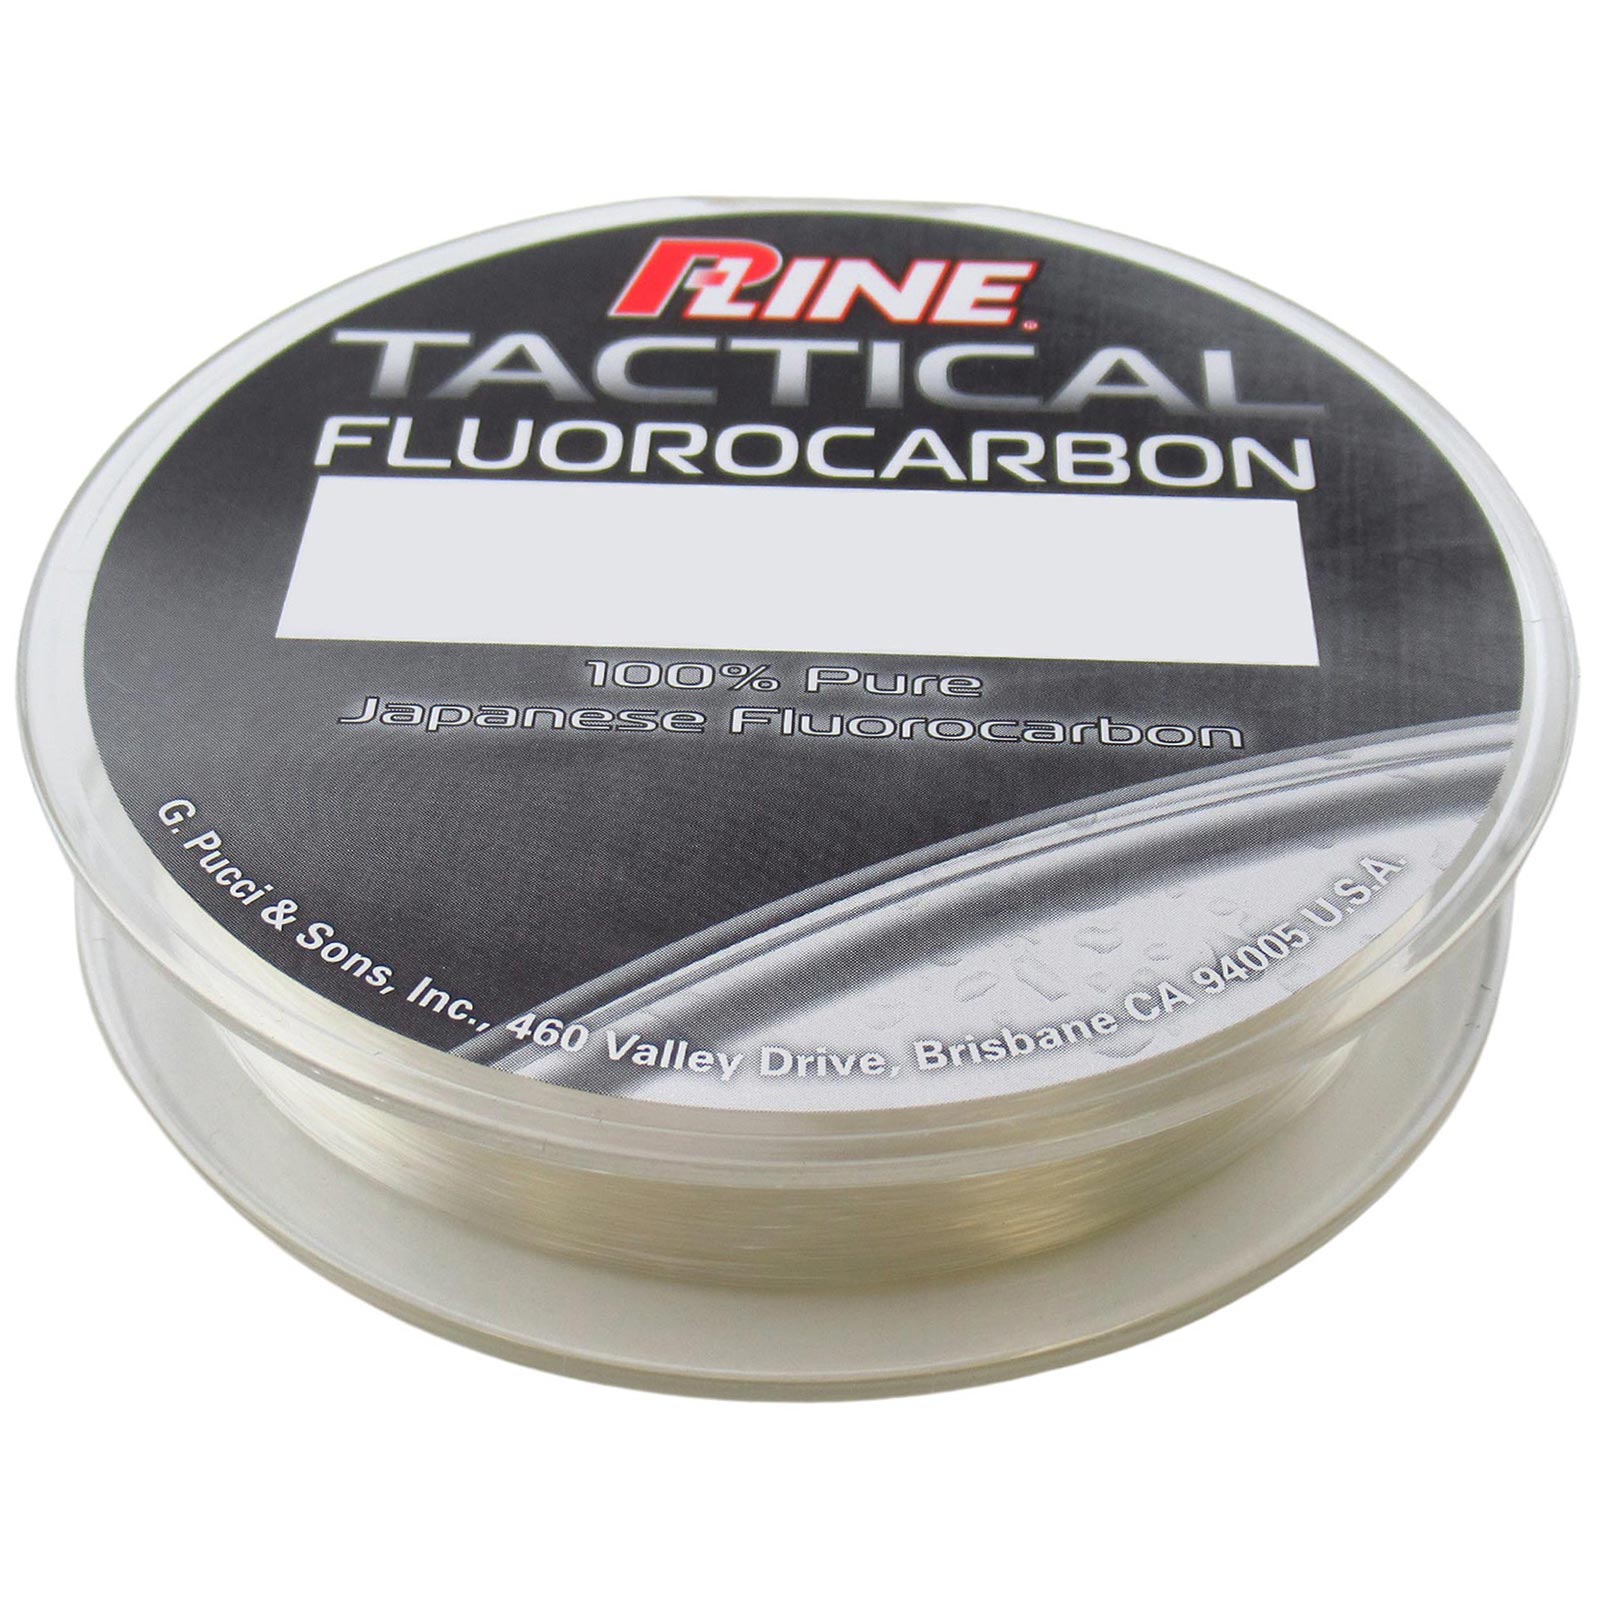 P-Line Tactical Fluorocarbon Line